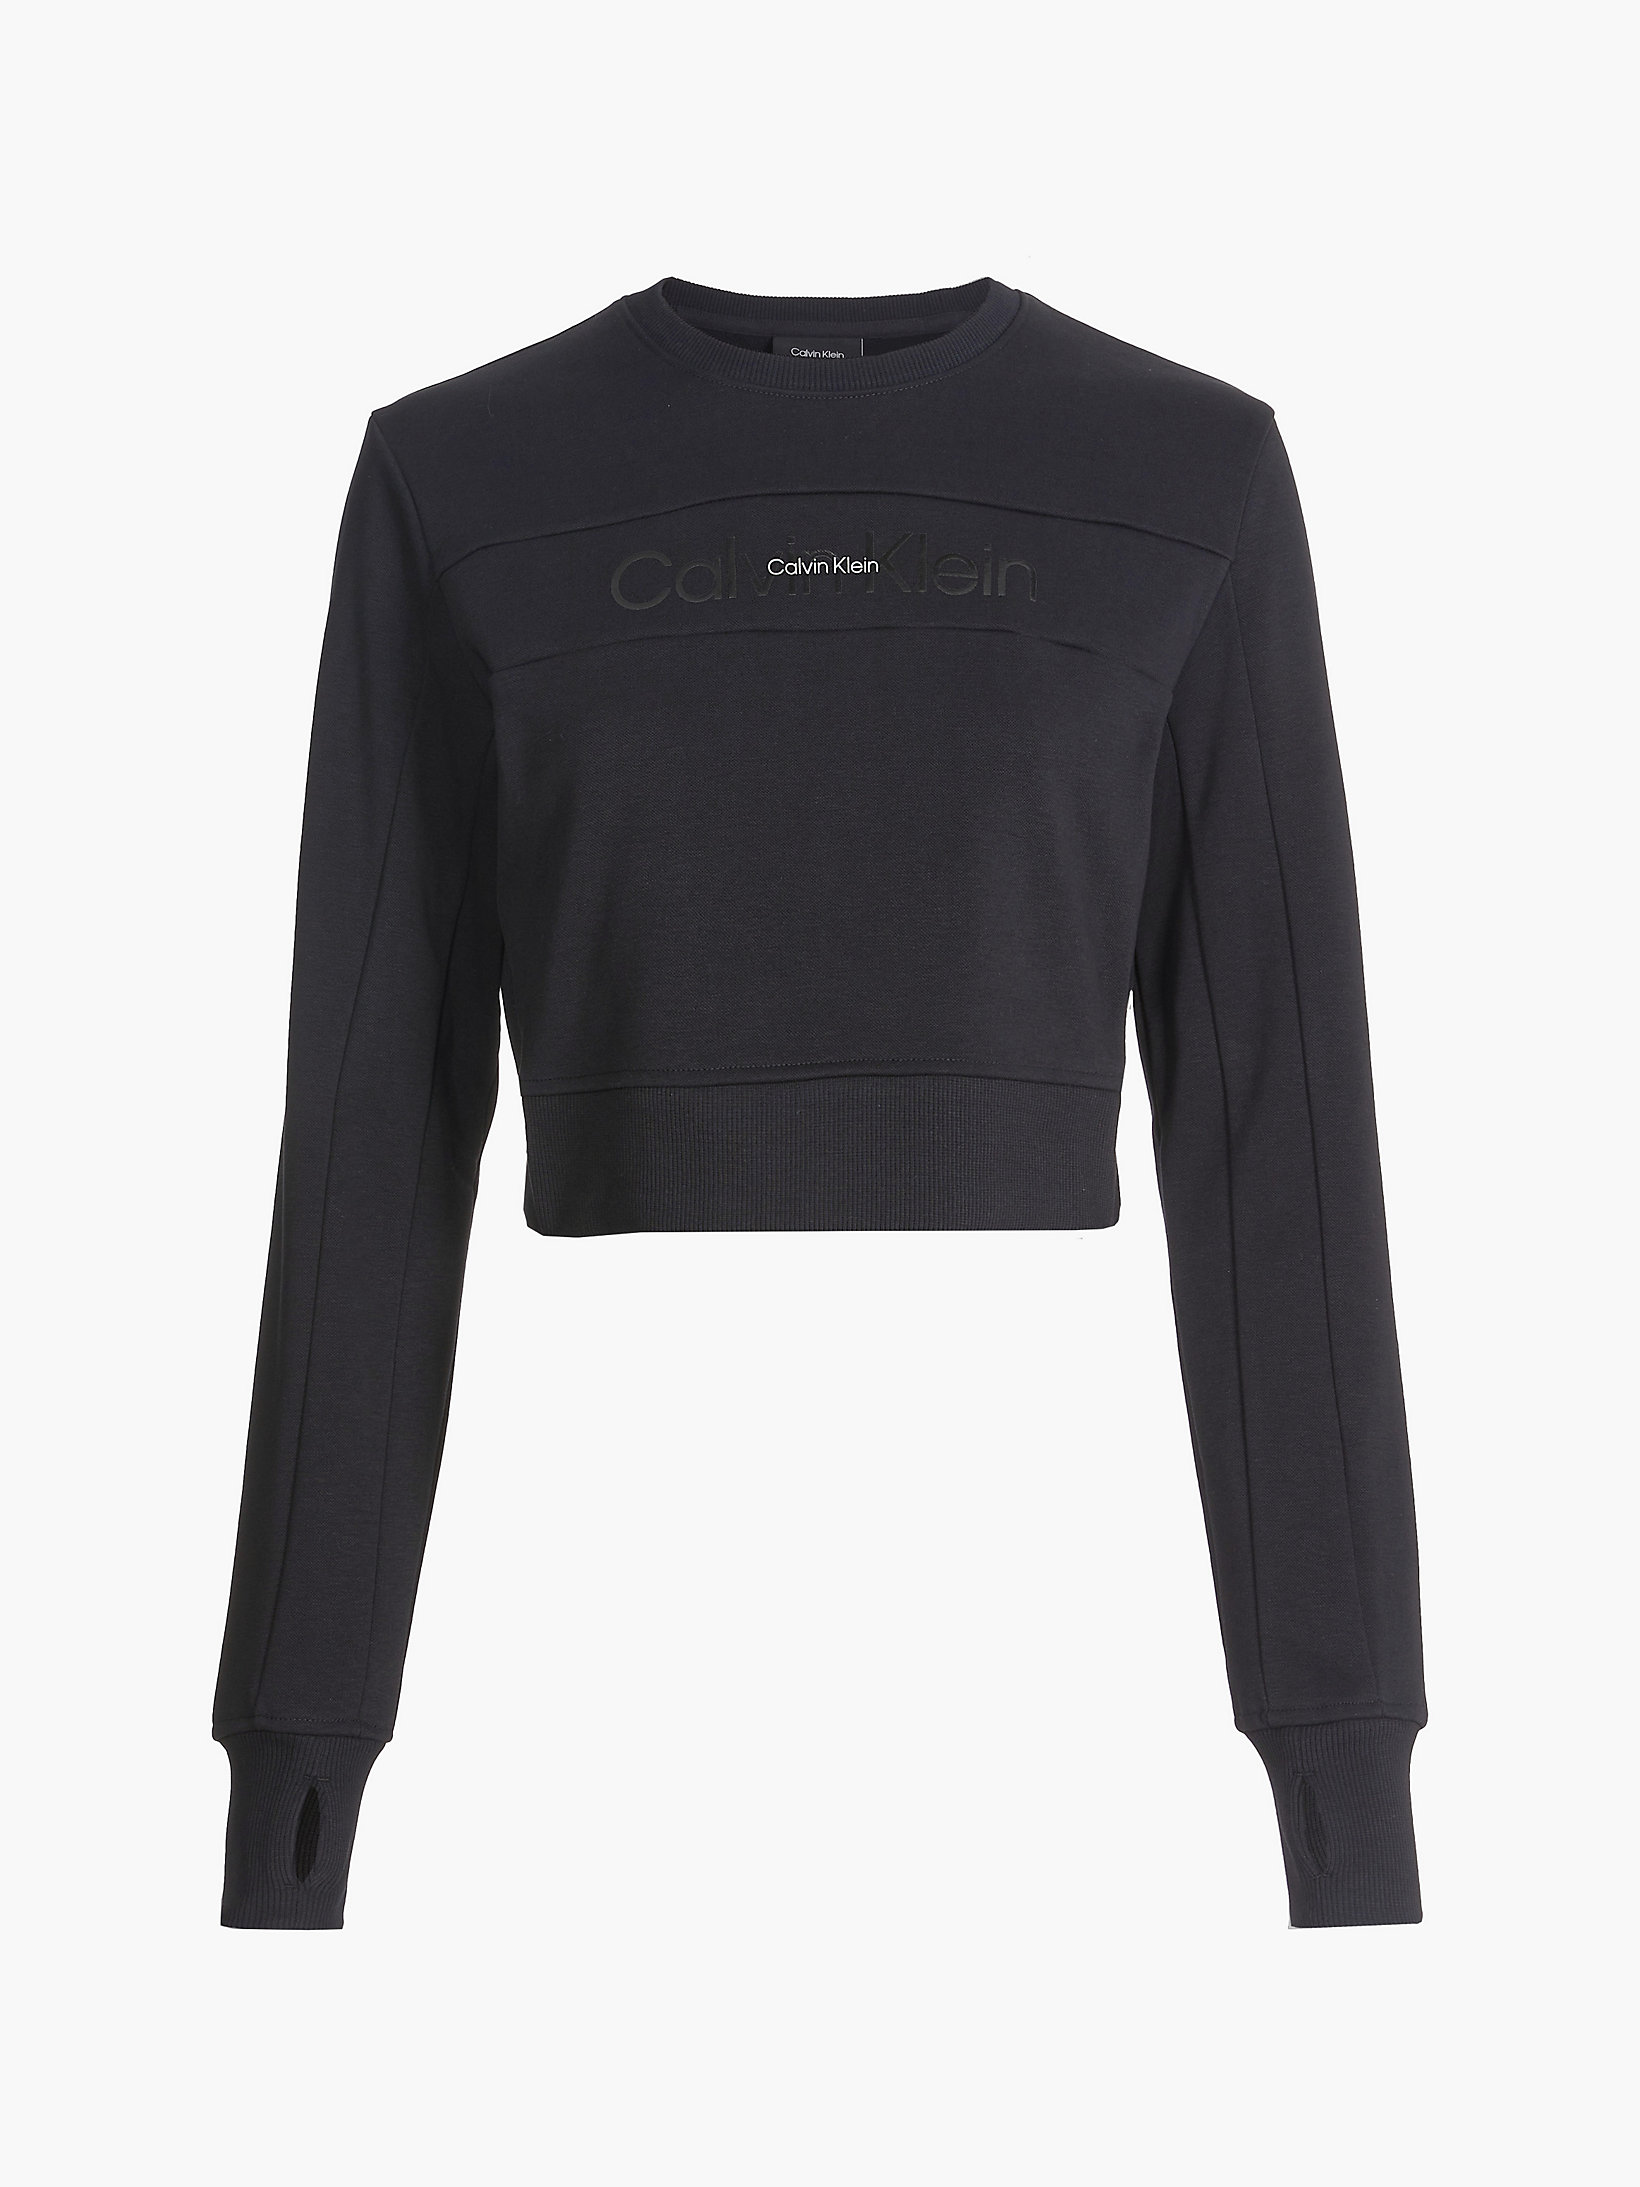 Sweat-Shirt Court Avec Logo > Black Beauty > undefined femmes > Calvin Klein